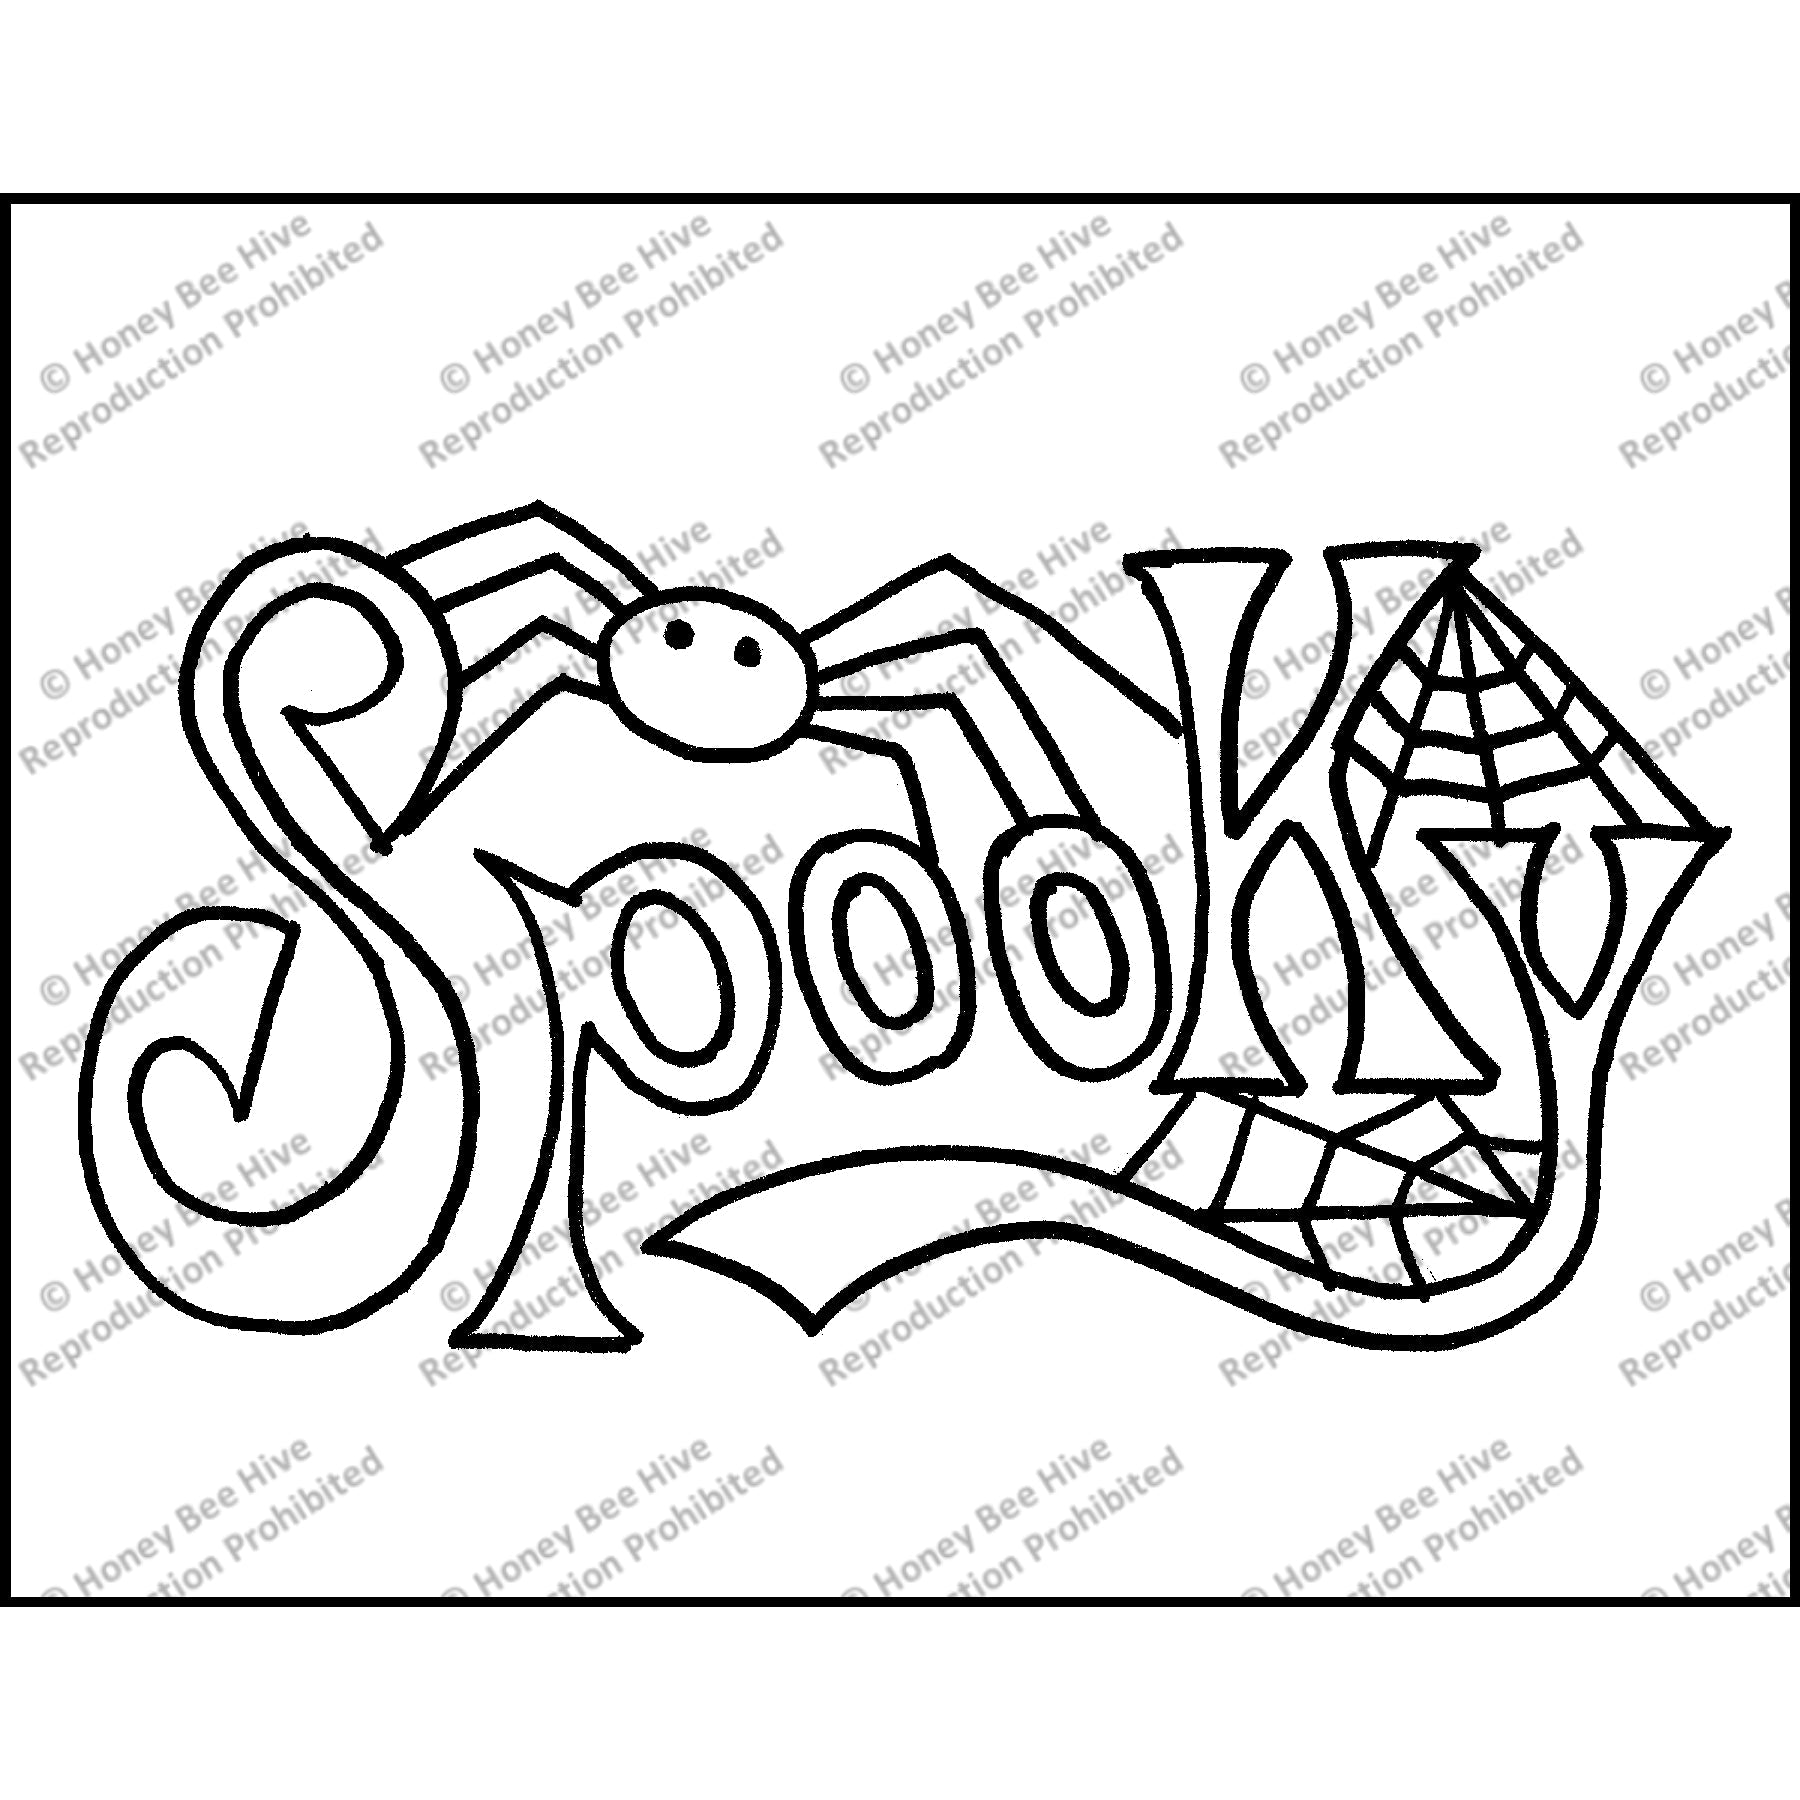 Spooky Spider, rug hooking pattern